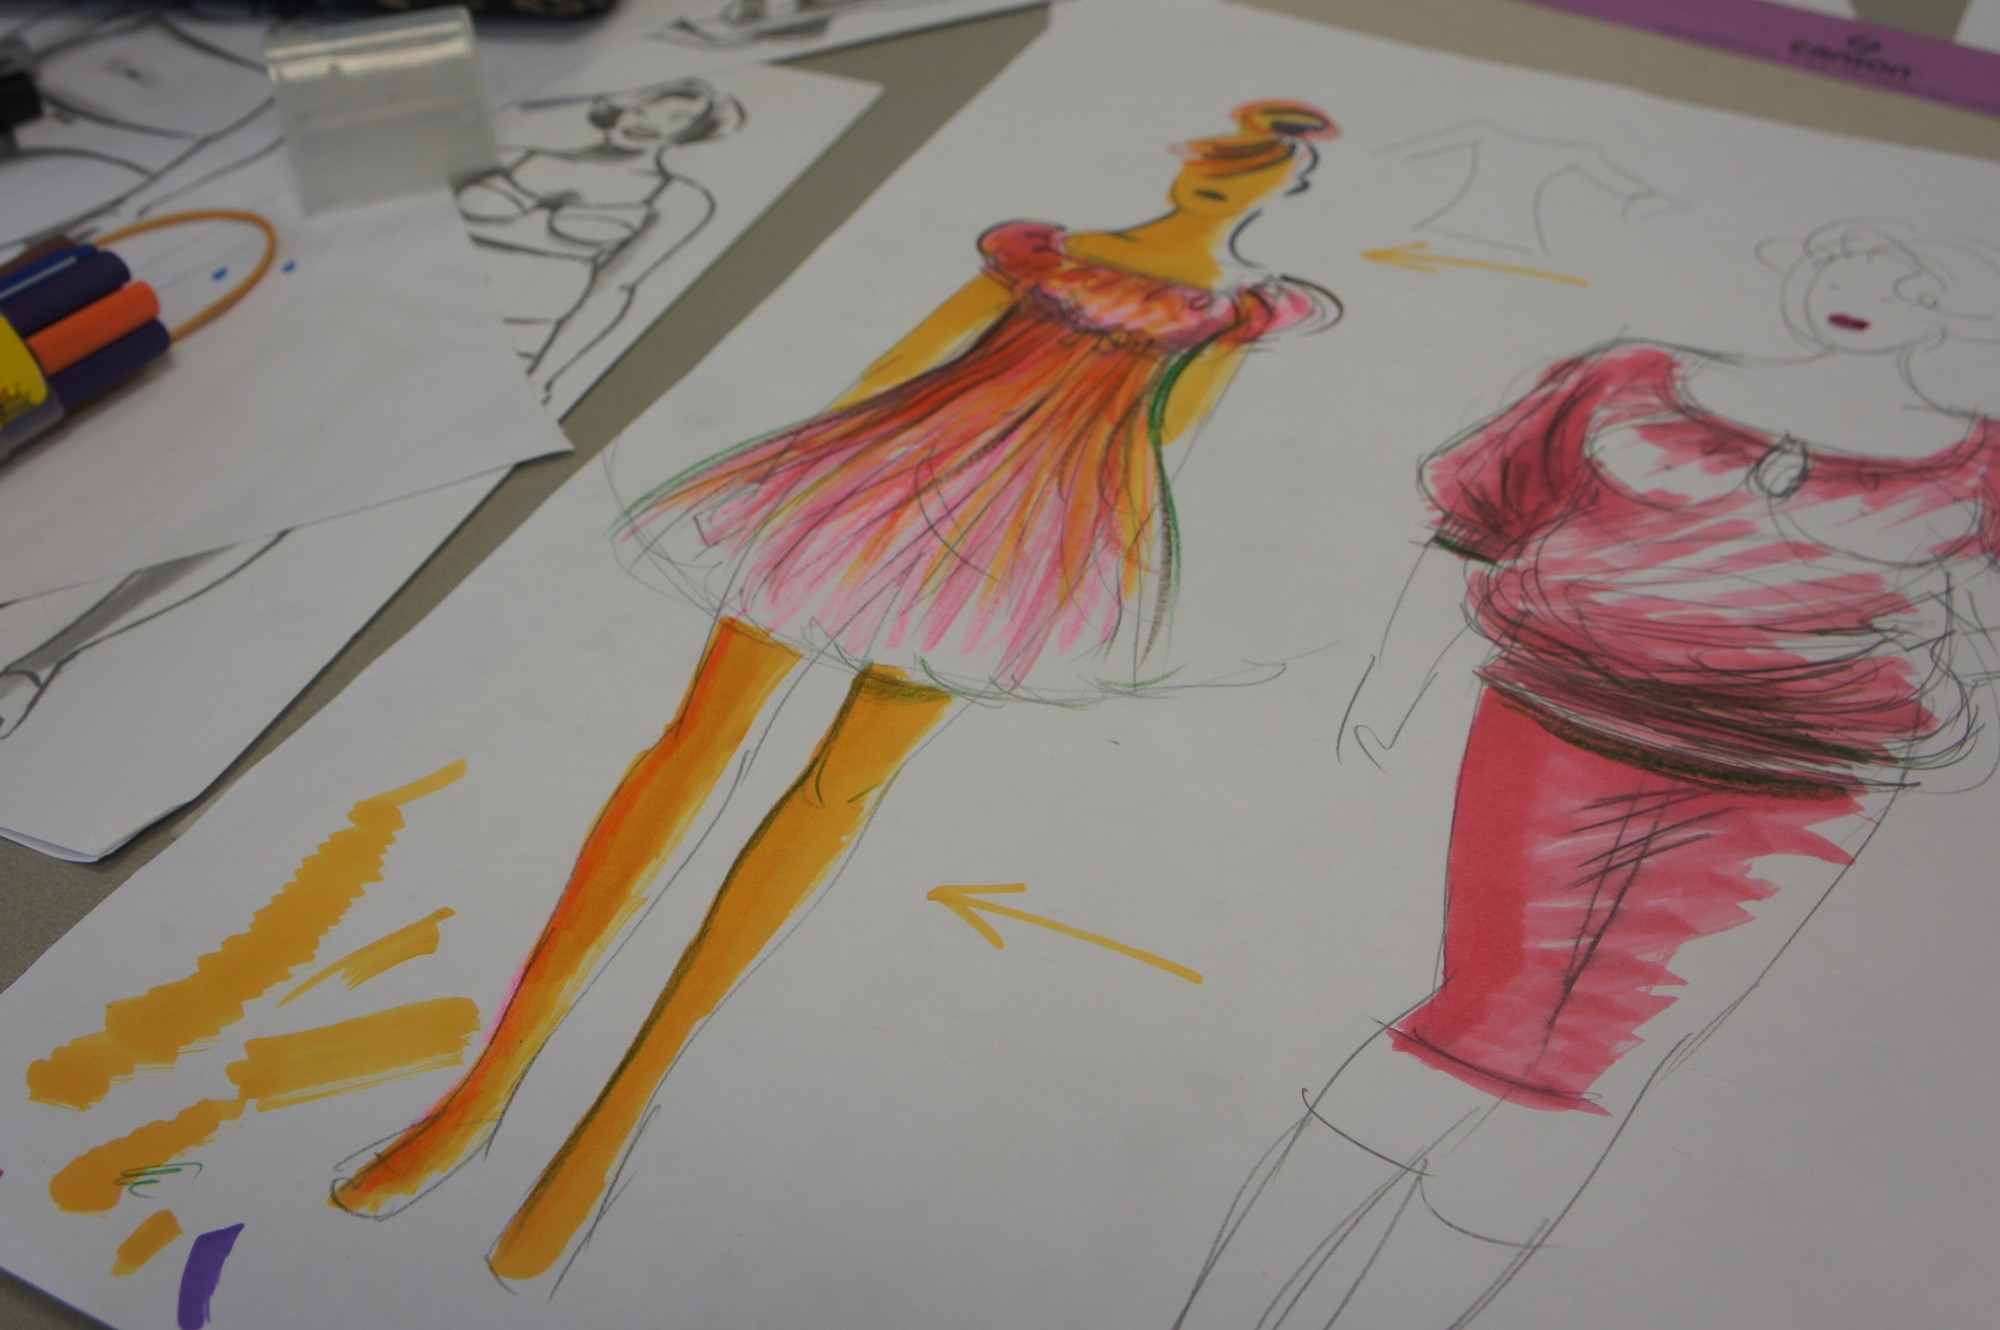 Ongebruikt Modetekenen schetsen van kleding op modefiguren | Modevakschool TU-41